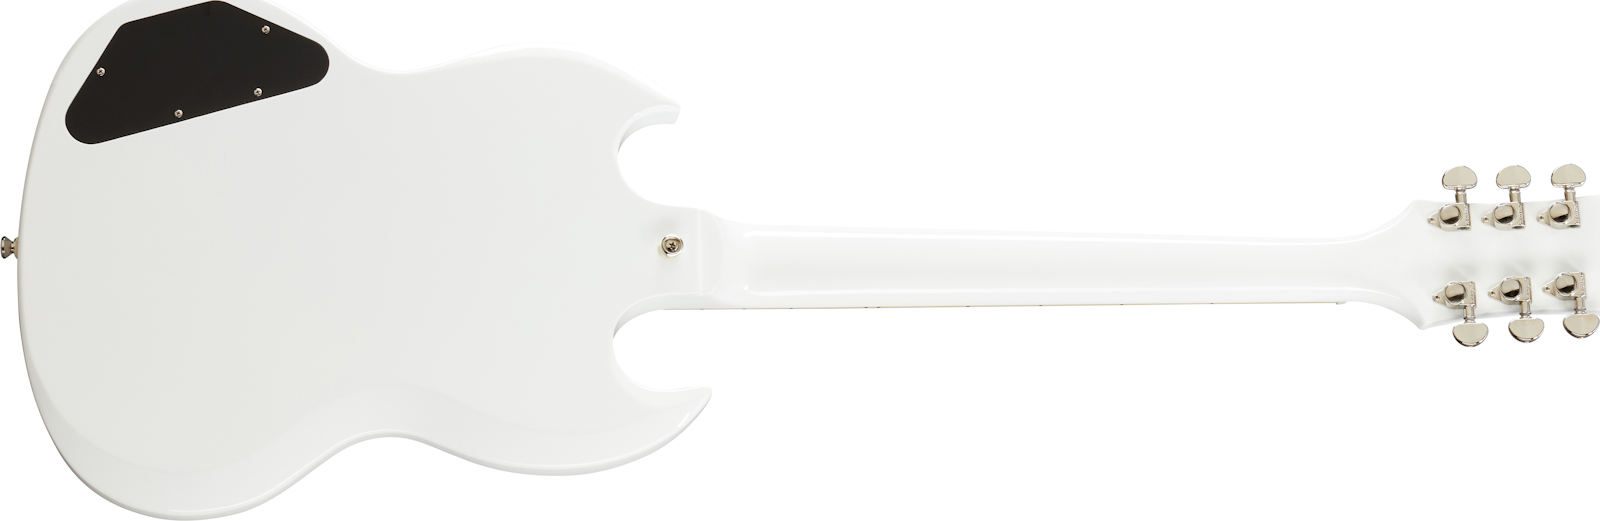 Epiphone Sg Standard 2h Ht Lau - Alpine White - Guitarra eléctrica de doble corte. - Variation 1